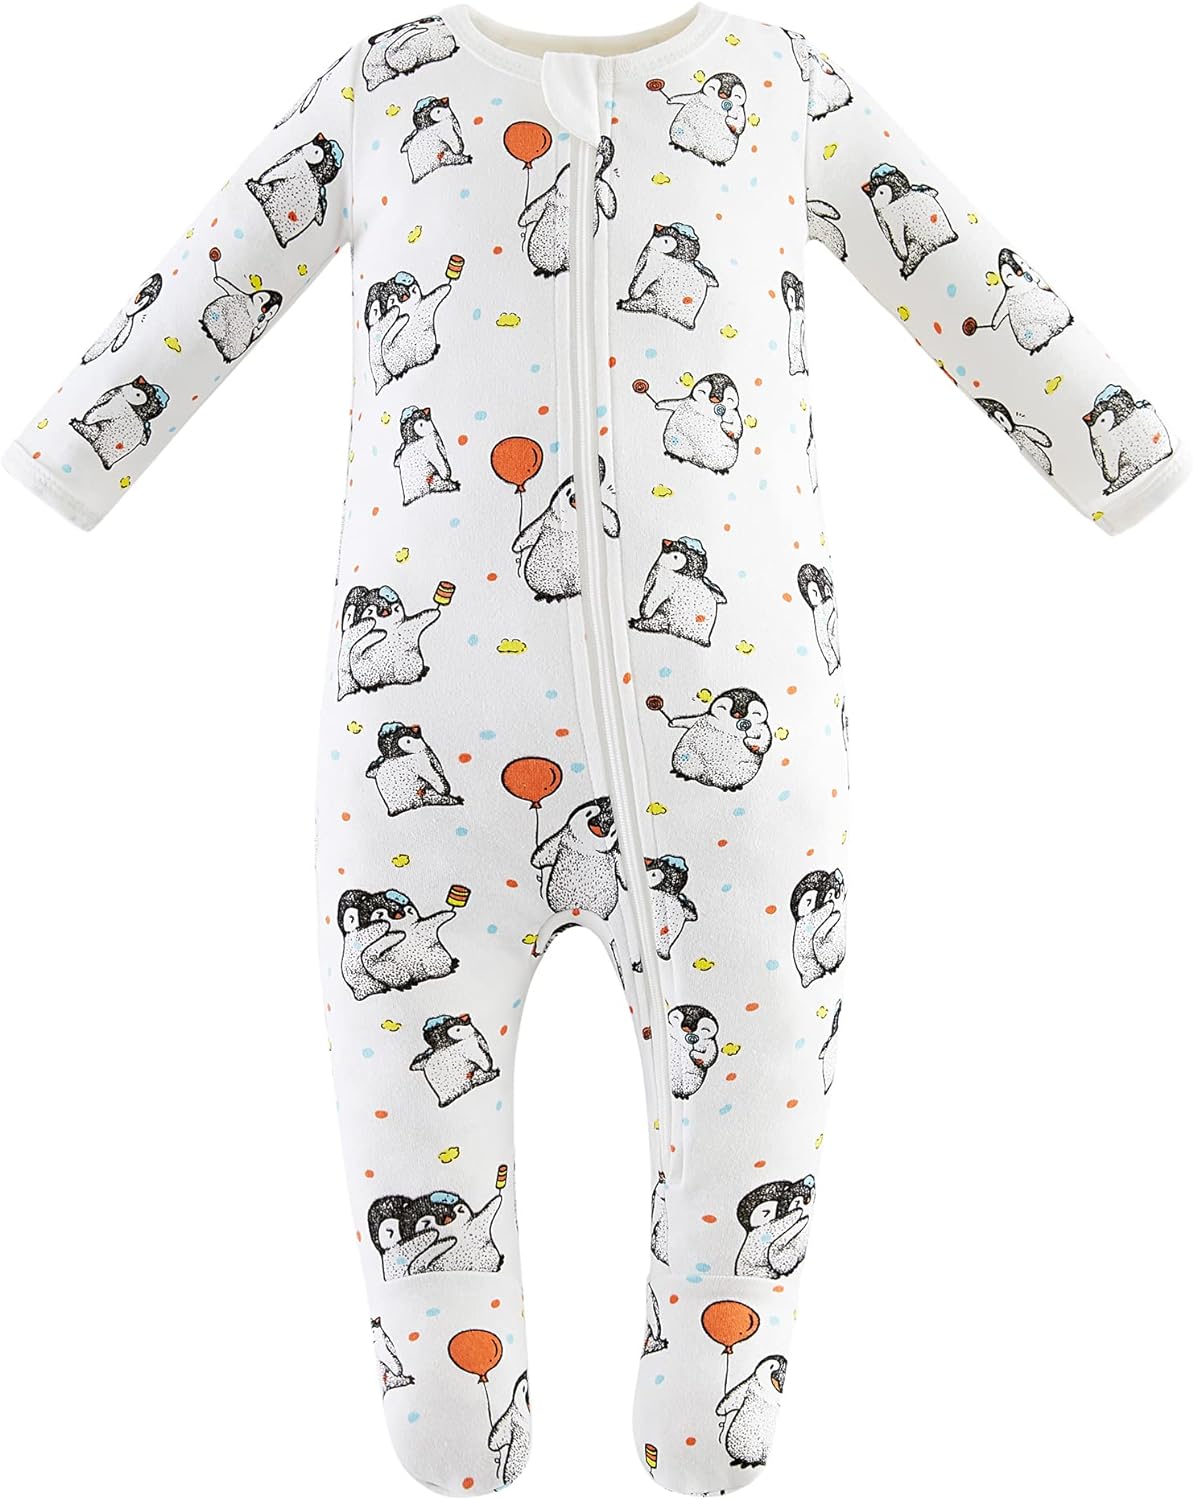 Owlivia Organic Cotton Baby Pajamas, Boys Girls Zip Front Sleep 'N Play, Footed Sleeper, Long Sleeve